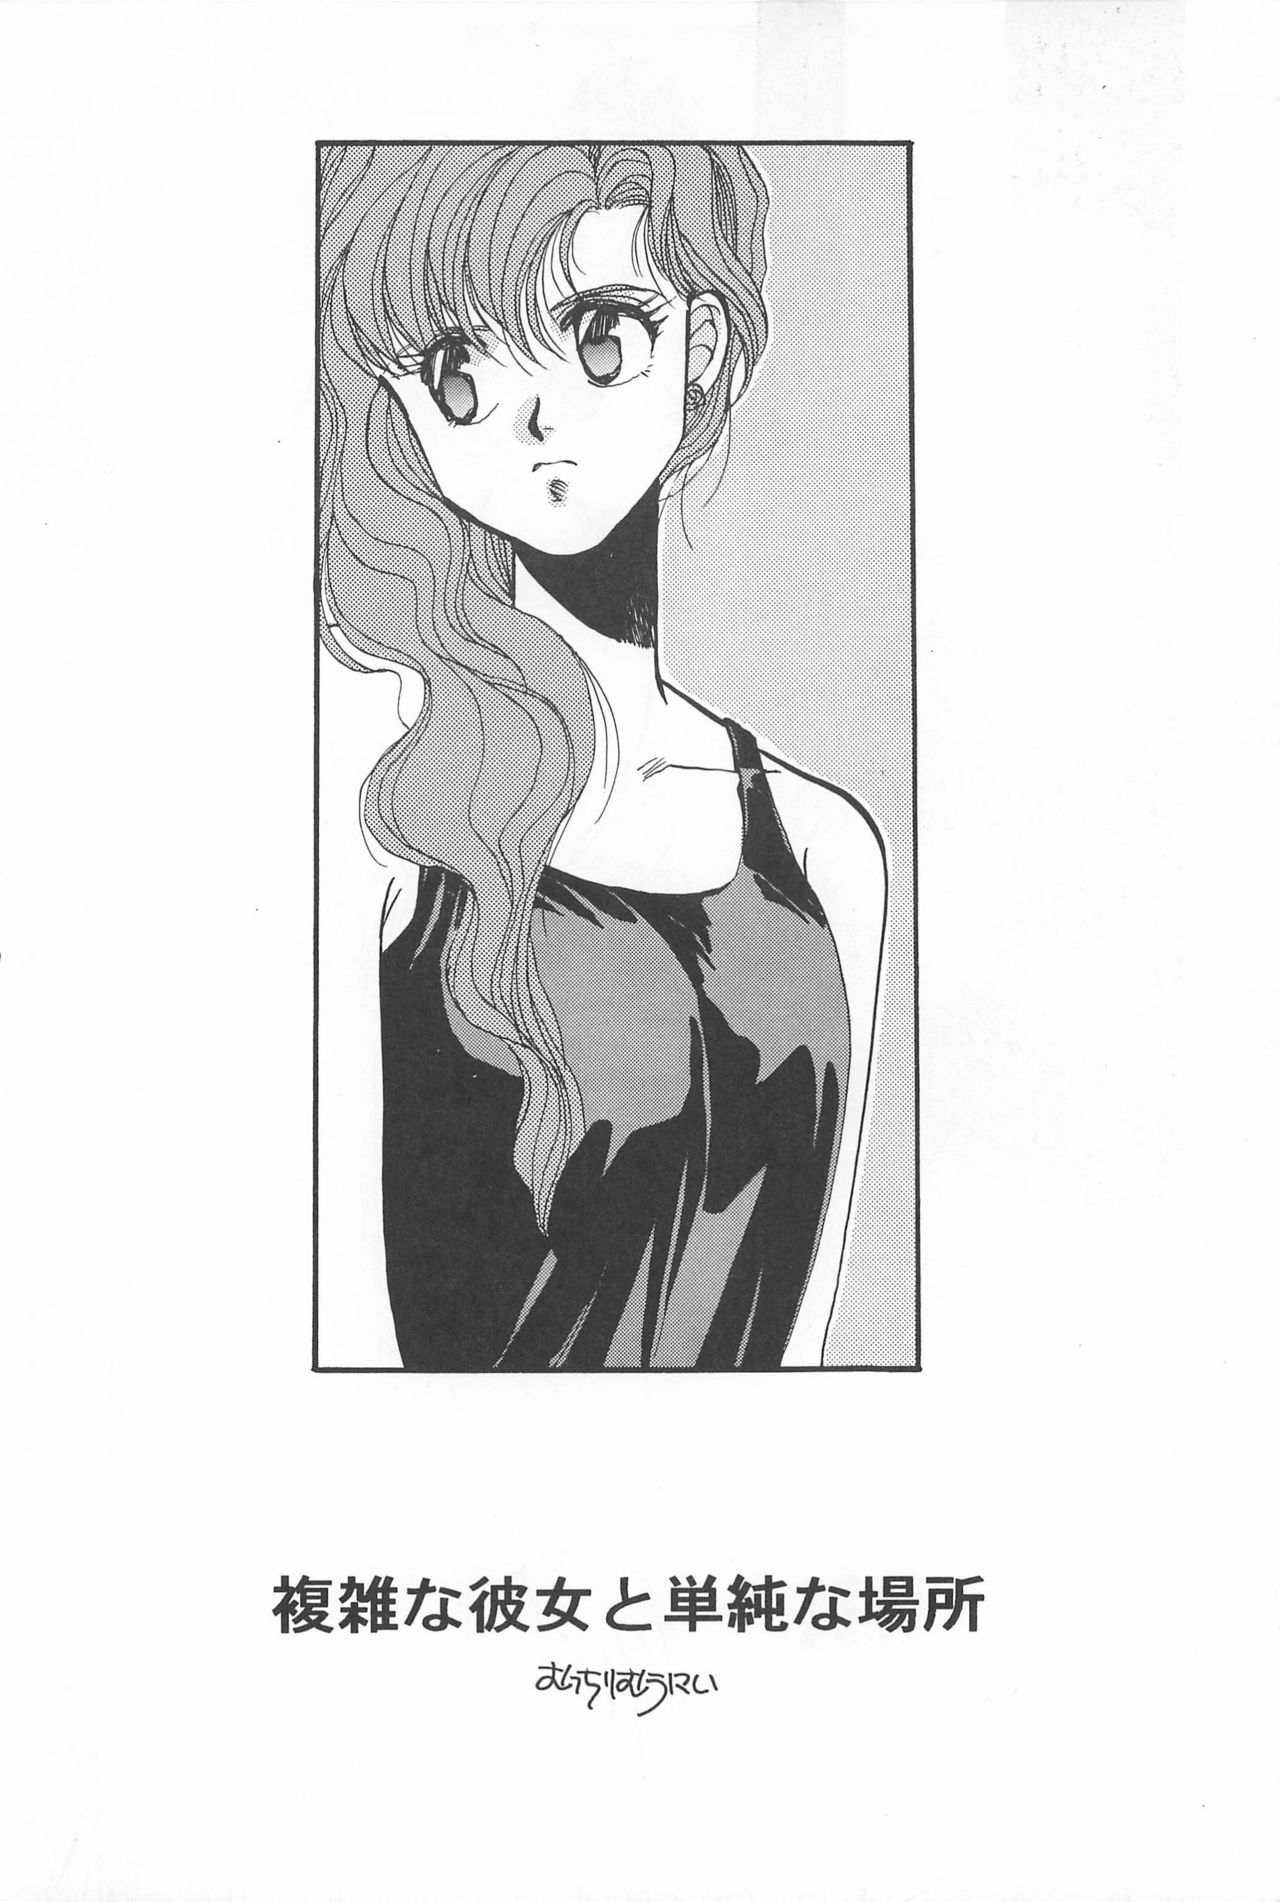 [Hello World (Muttri Moony)] Kaze no You ni Yume no You ni - Sailor Moon Collection (Sailor Moon) 149